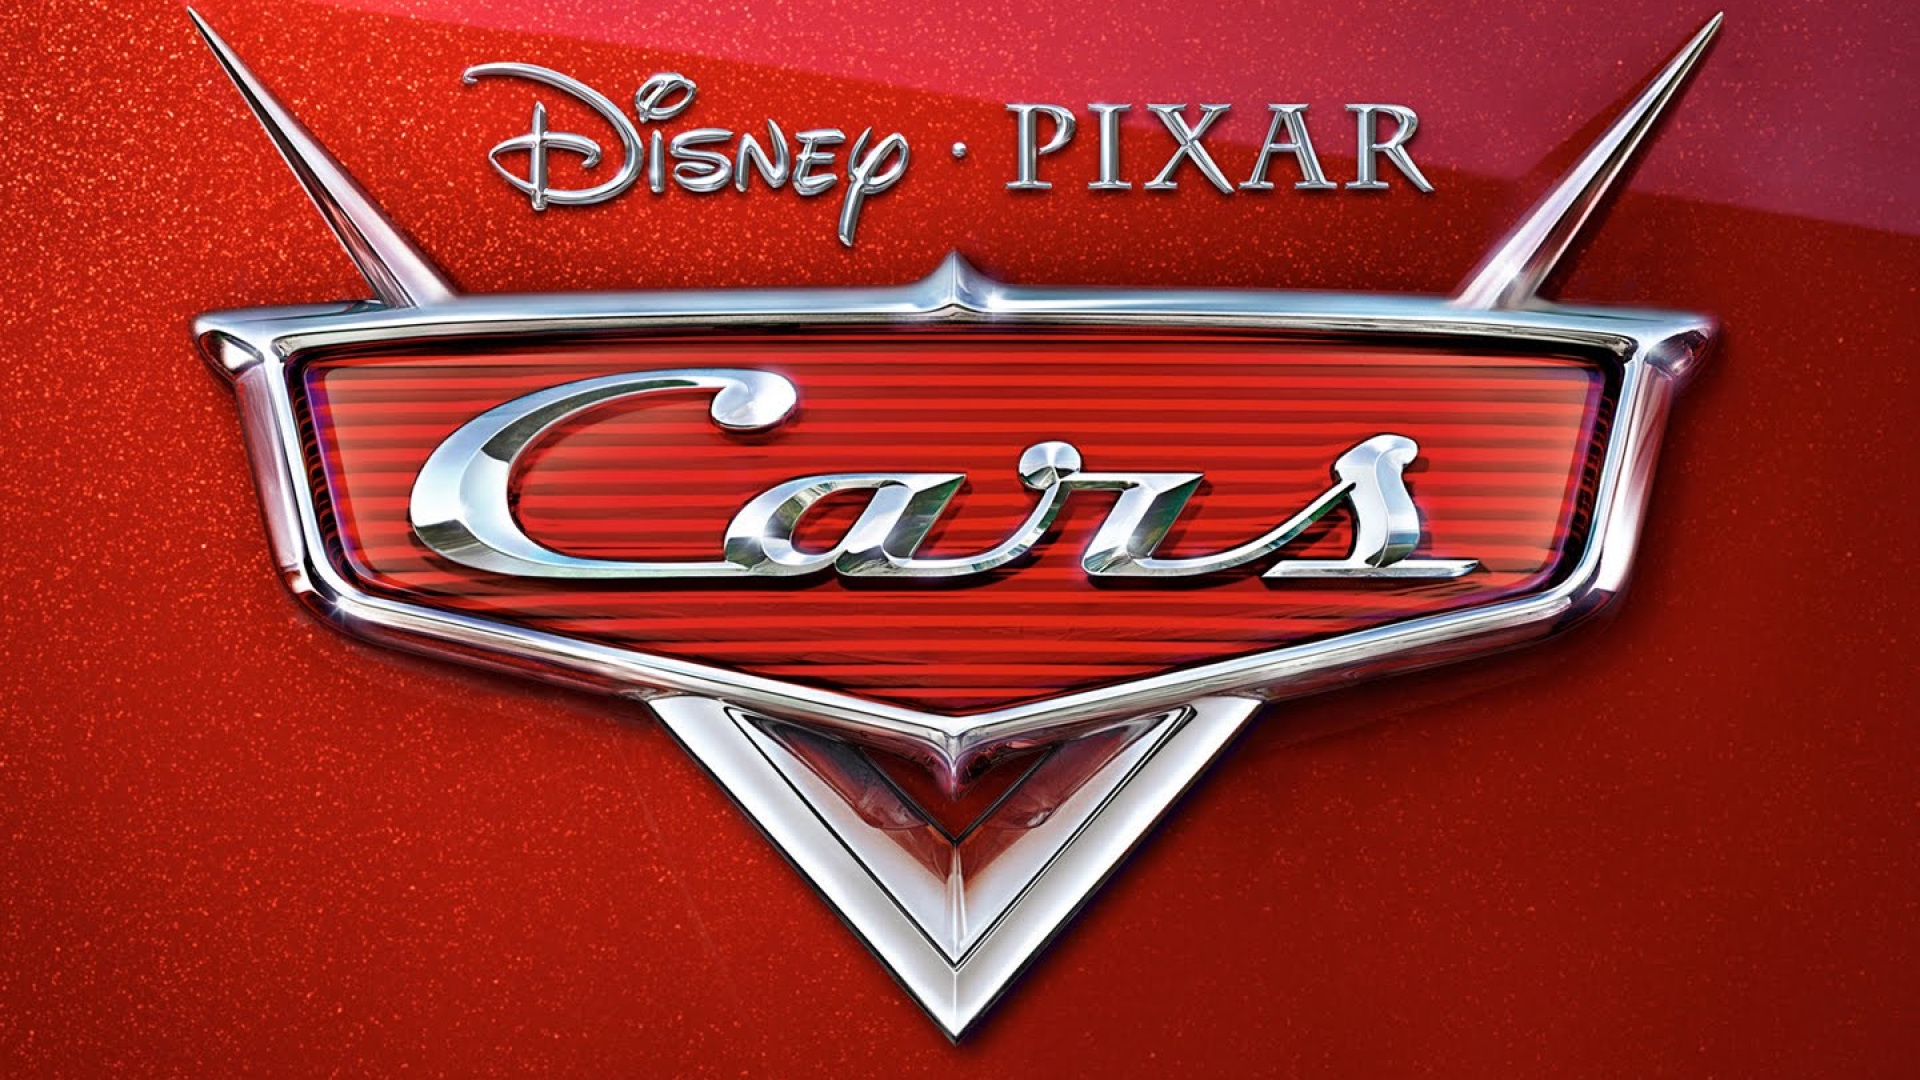 Disney Pixar Cars Wallpaper wallpaper   964327